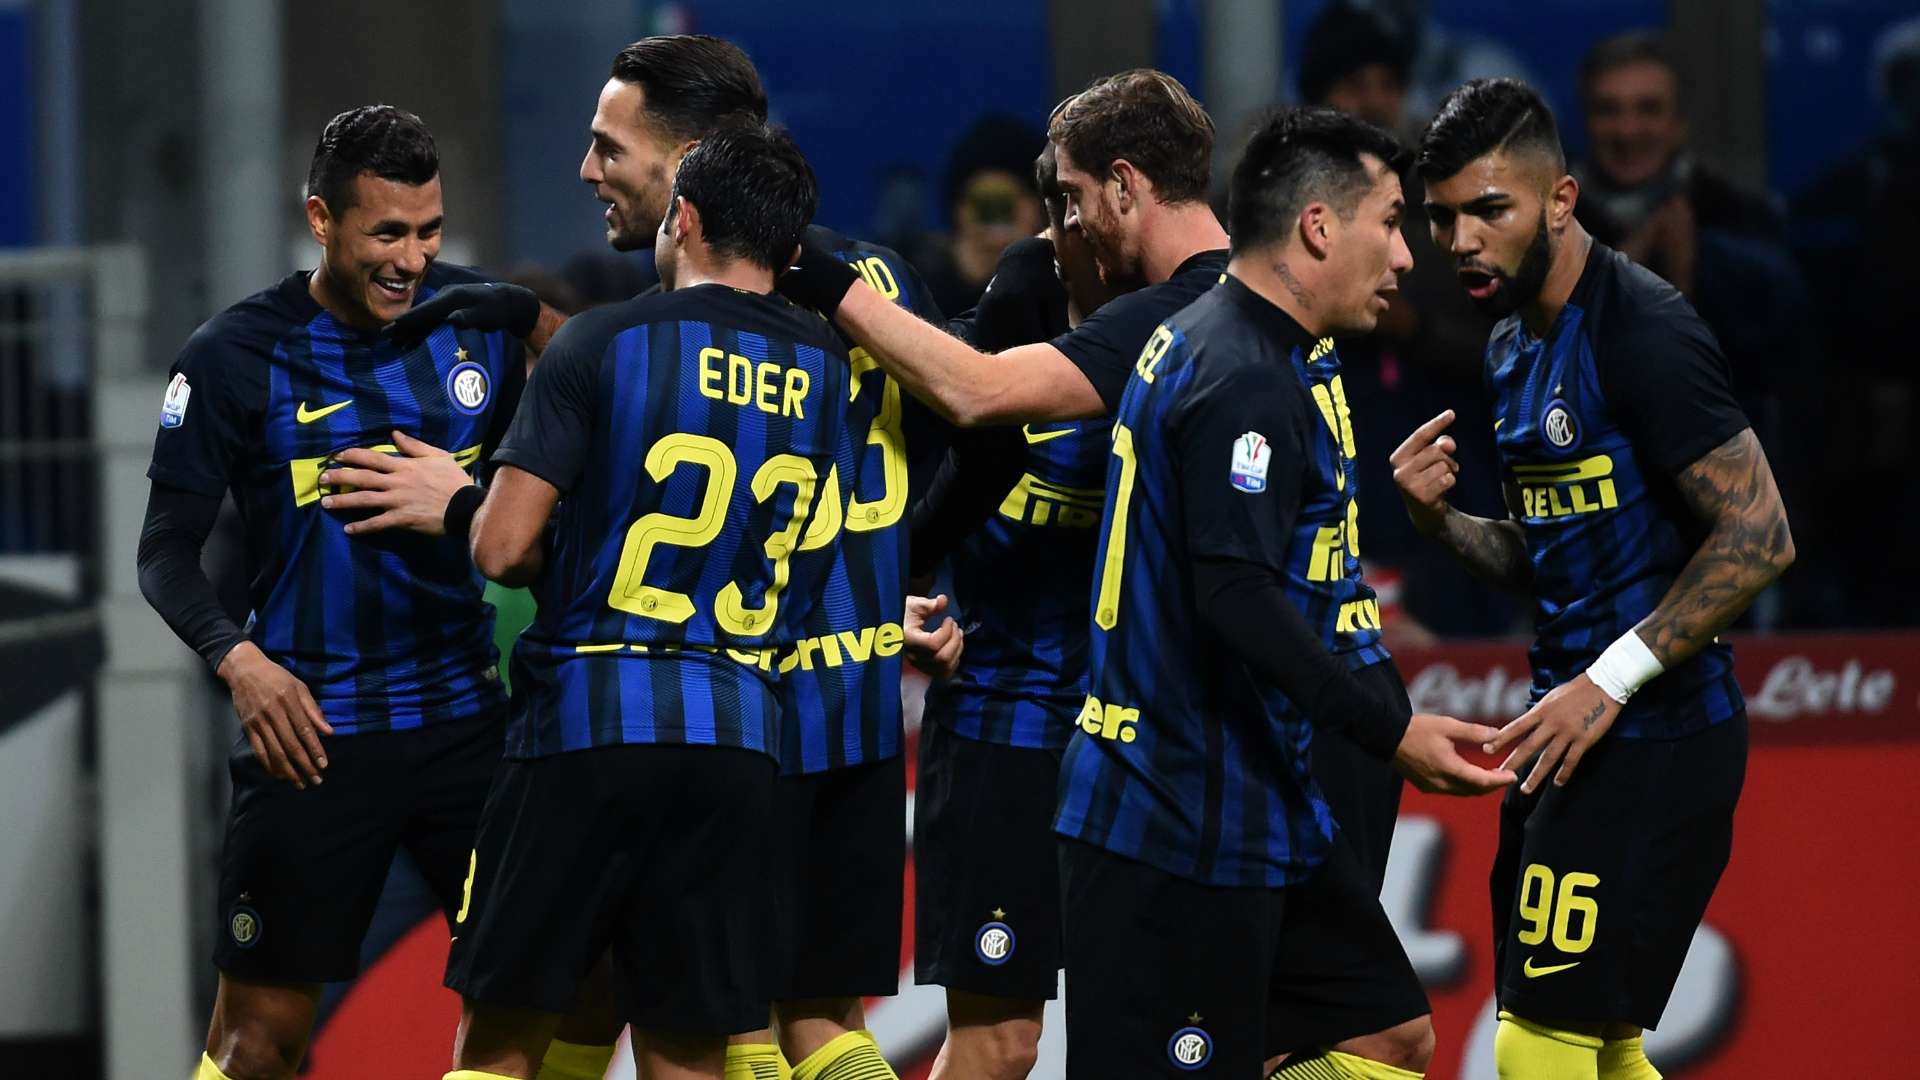 Jeison Murillo celebrating with his teammates Inter Bologna Coppa Italia 2016-17